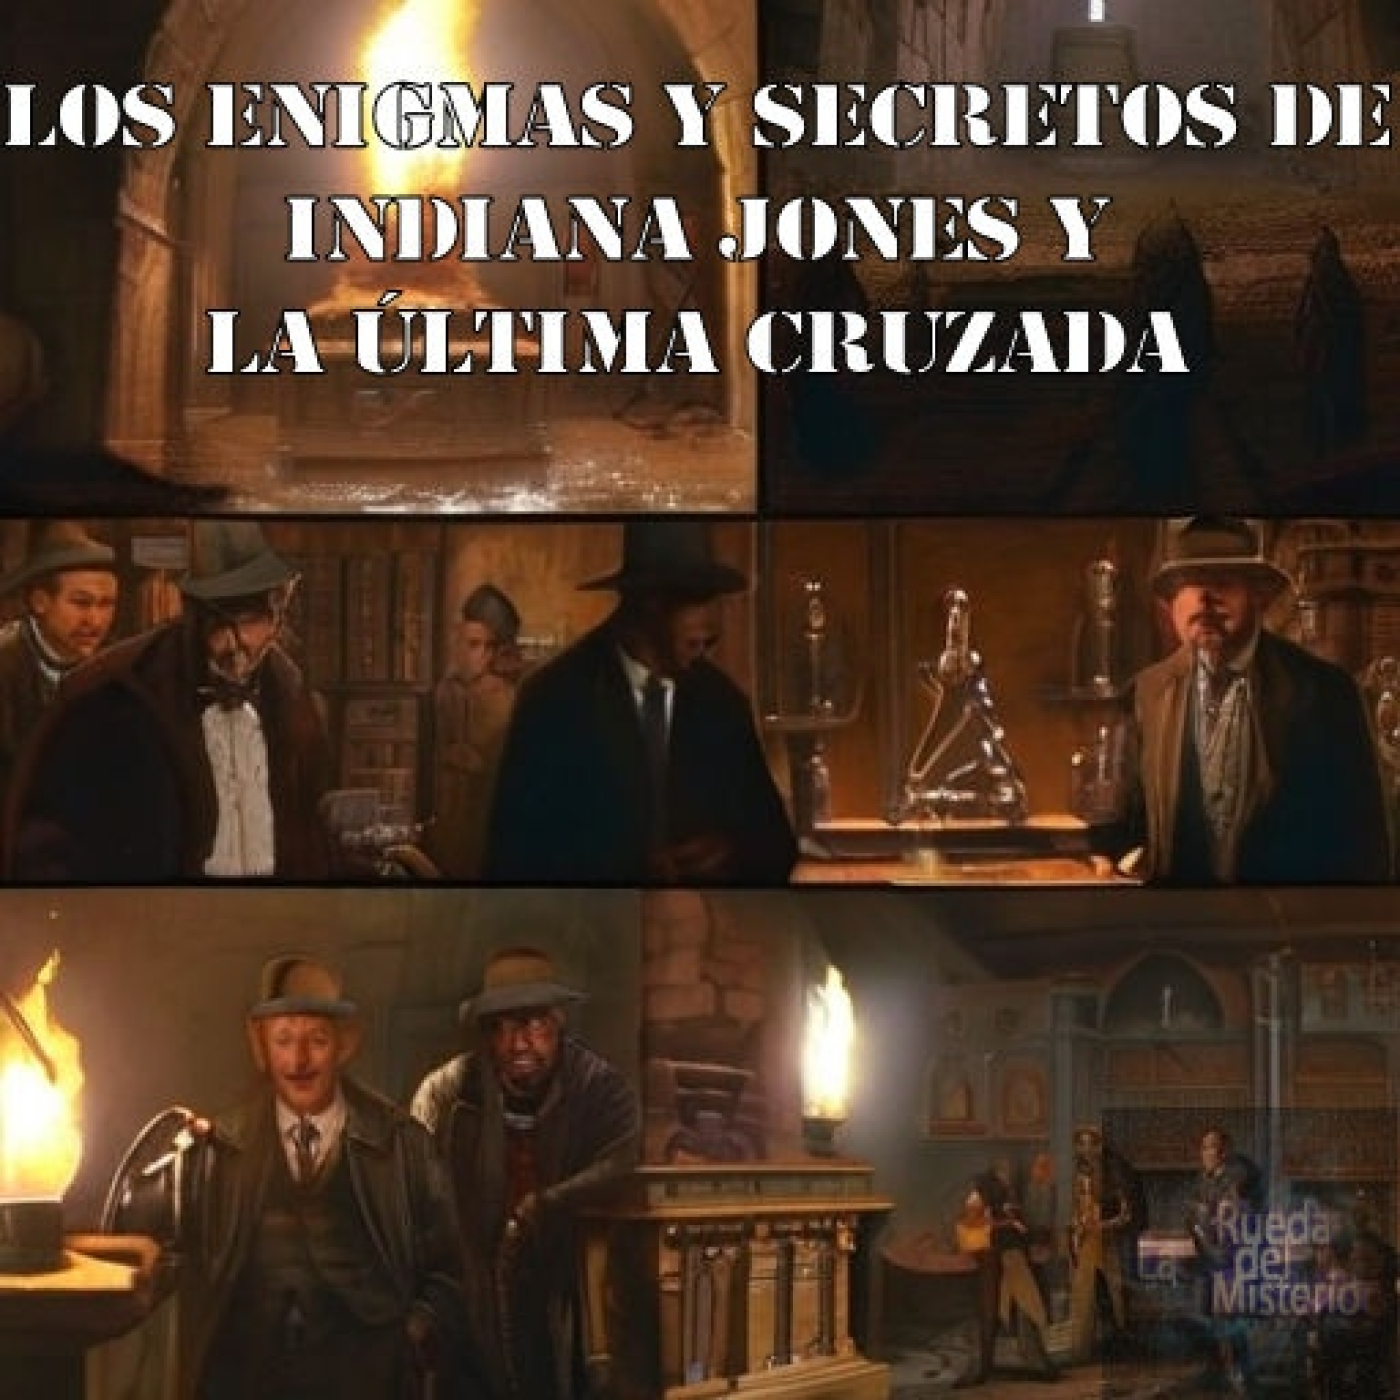 Los Enigmas y Secretos de Indiana Jones y la Última Cruzada. - Episodio exclusivo para mecenas